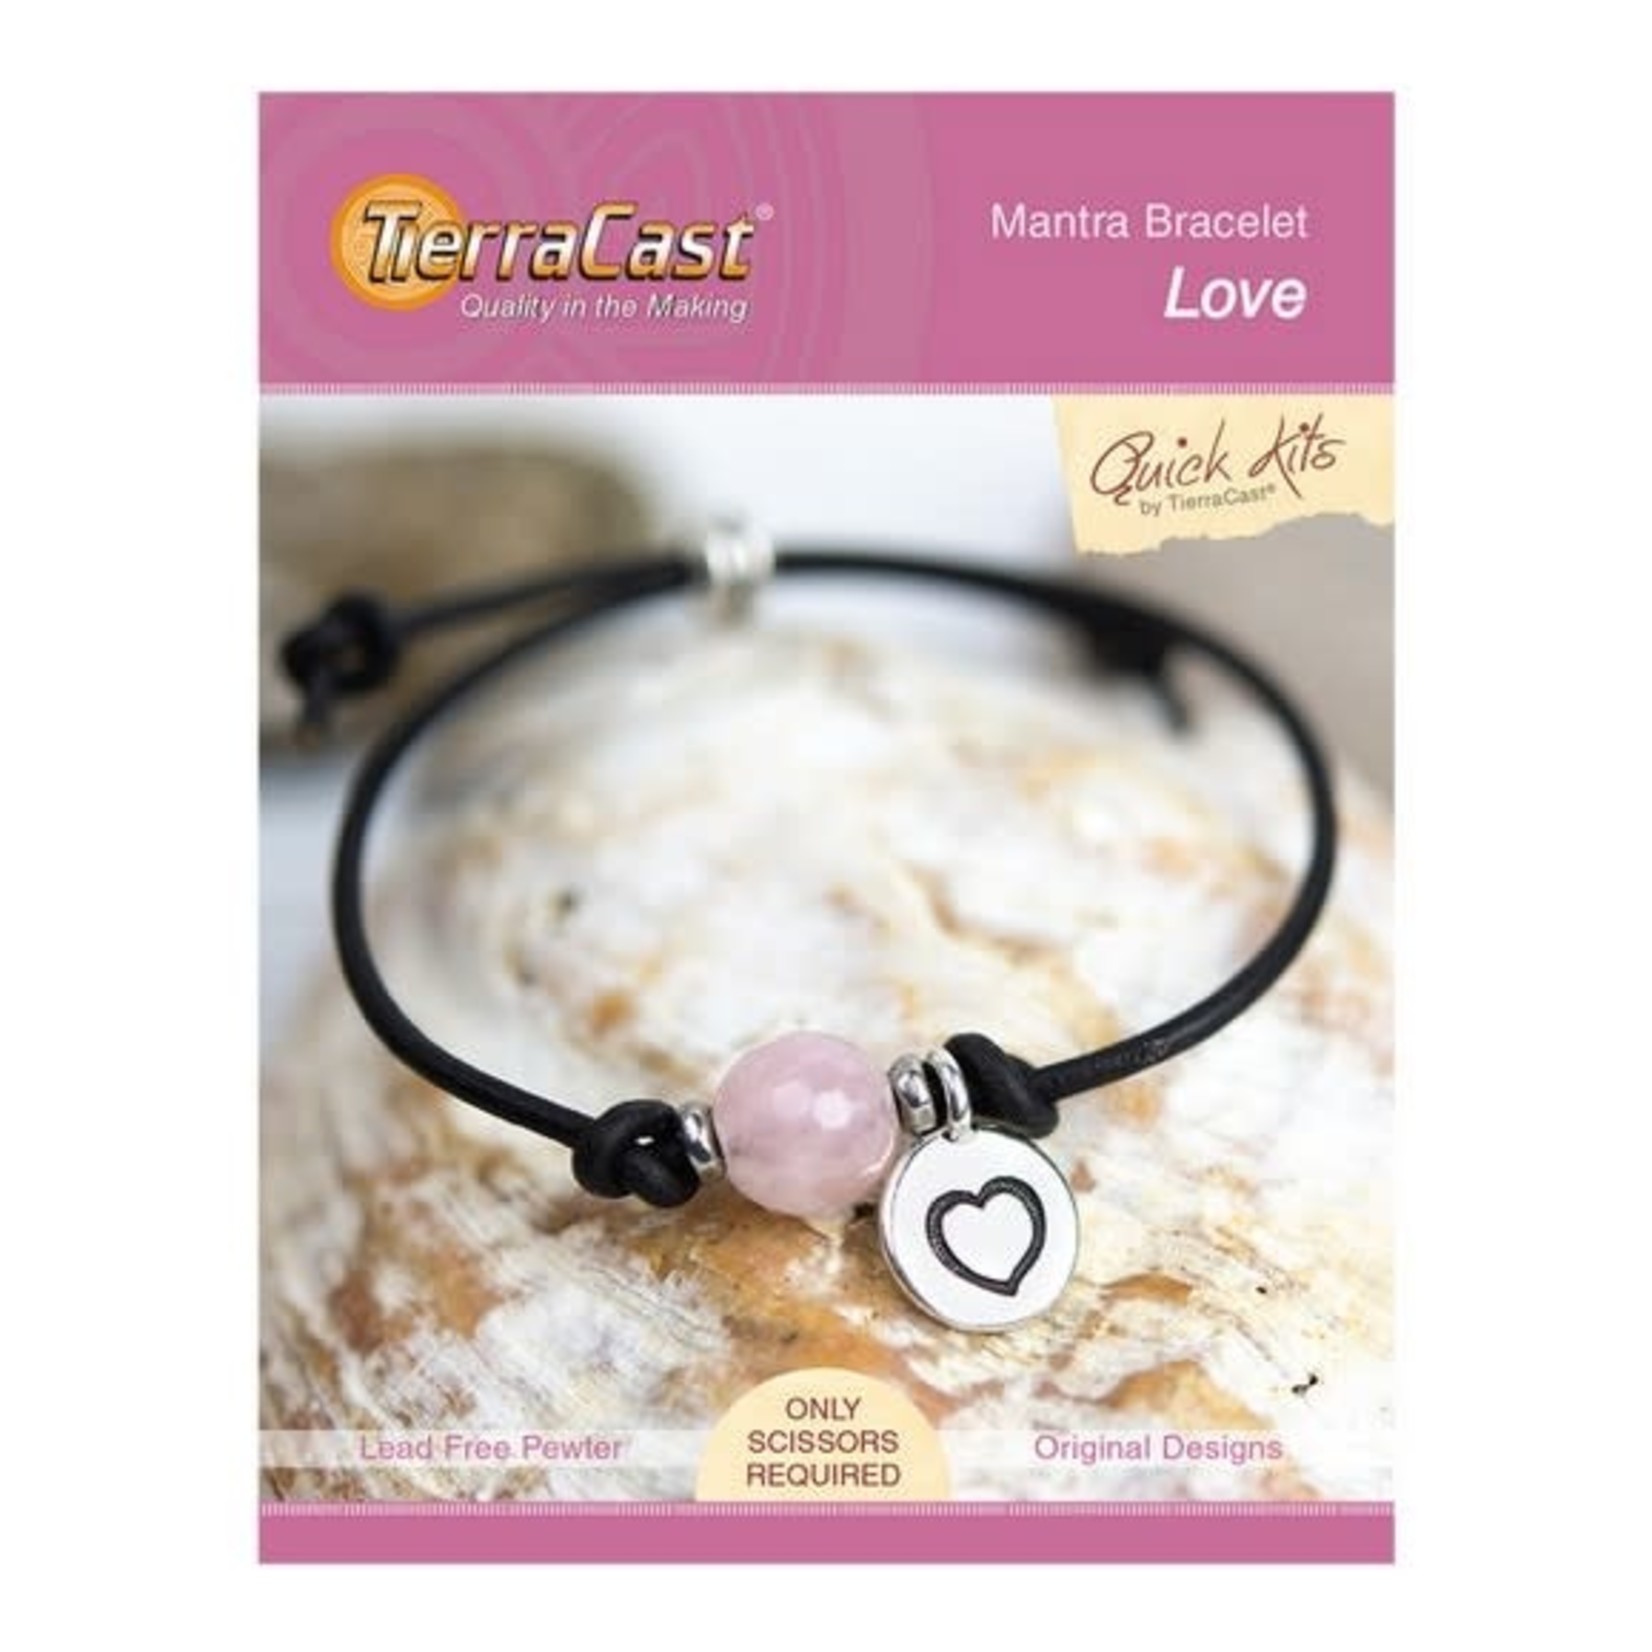 Love Mantra Bracelet Kit